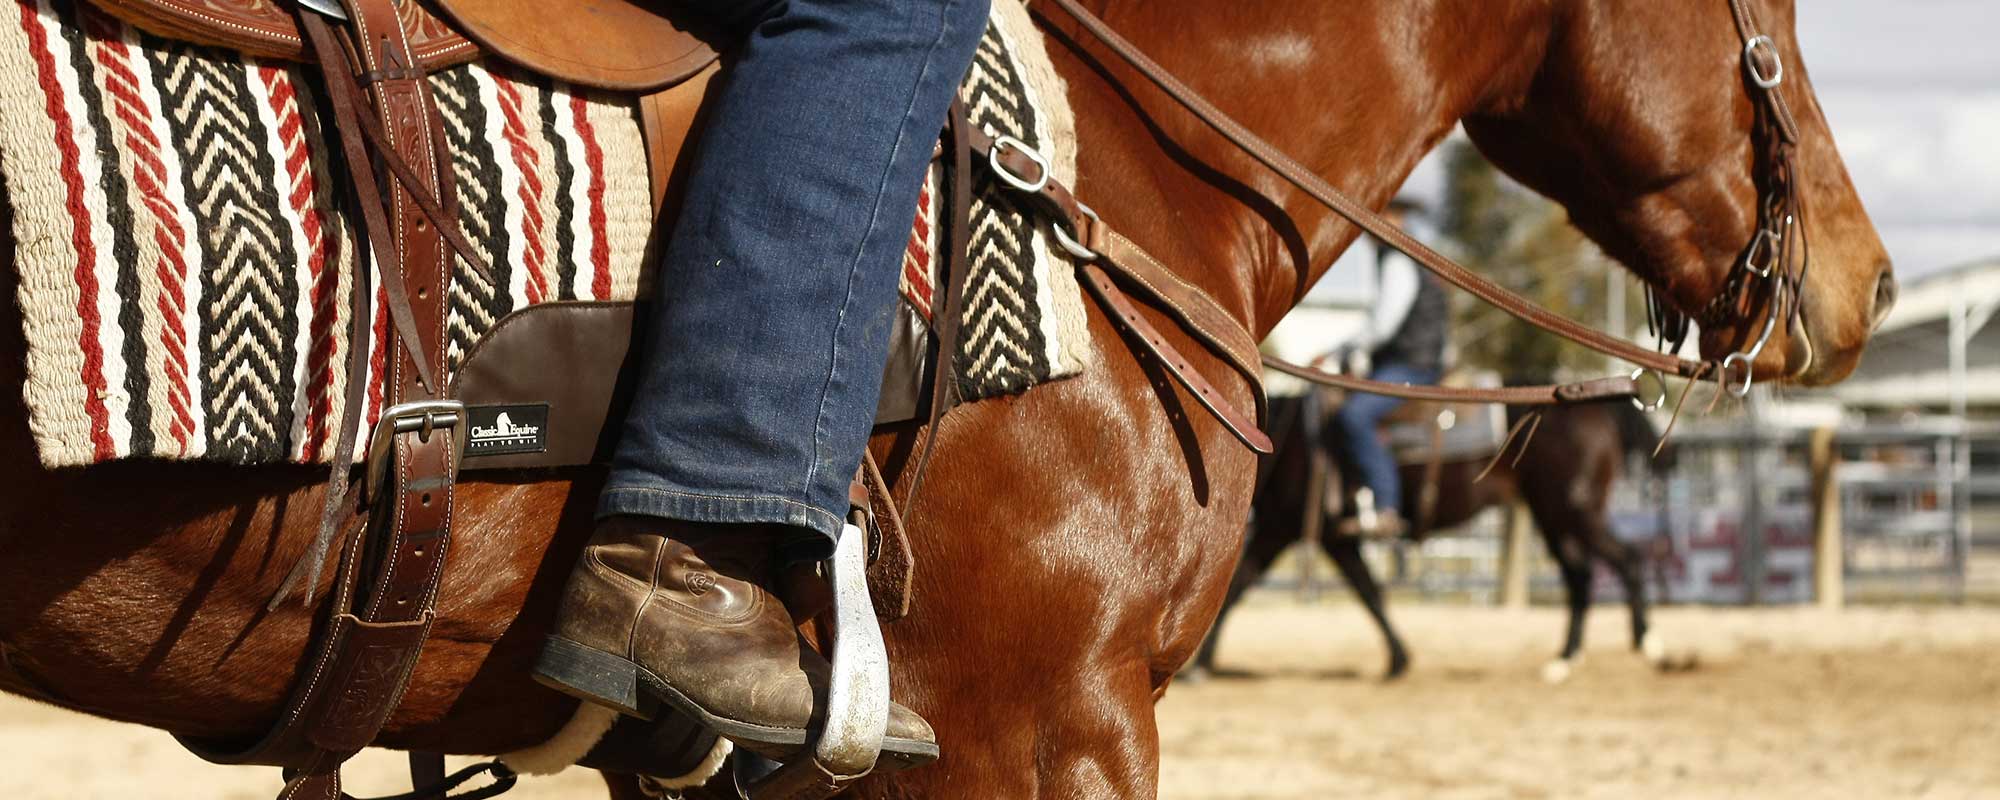 Western horse rider boot in stirrup